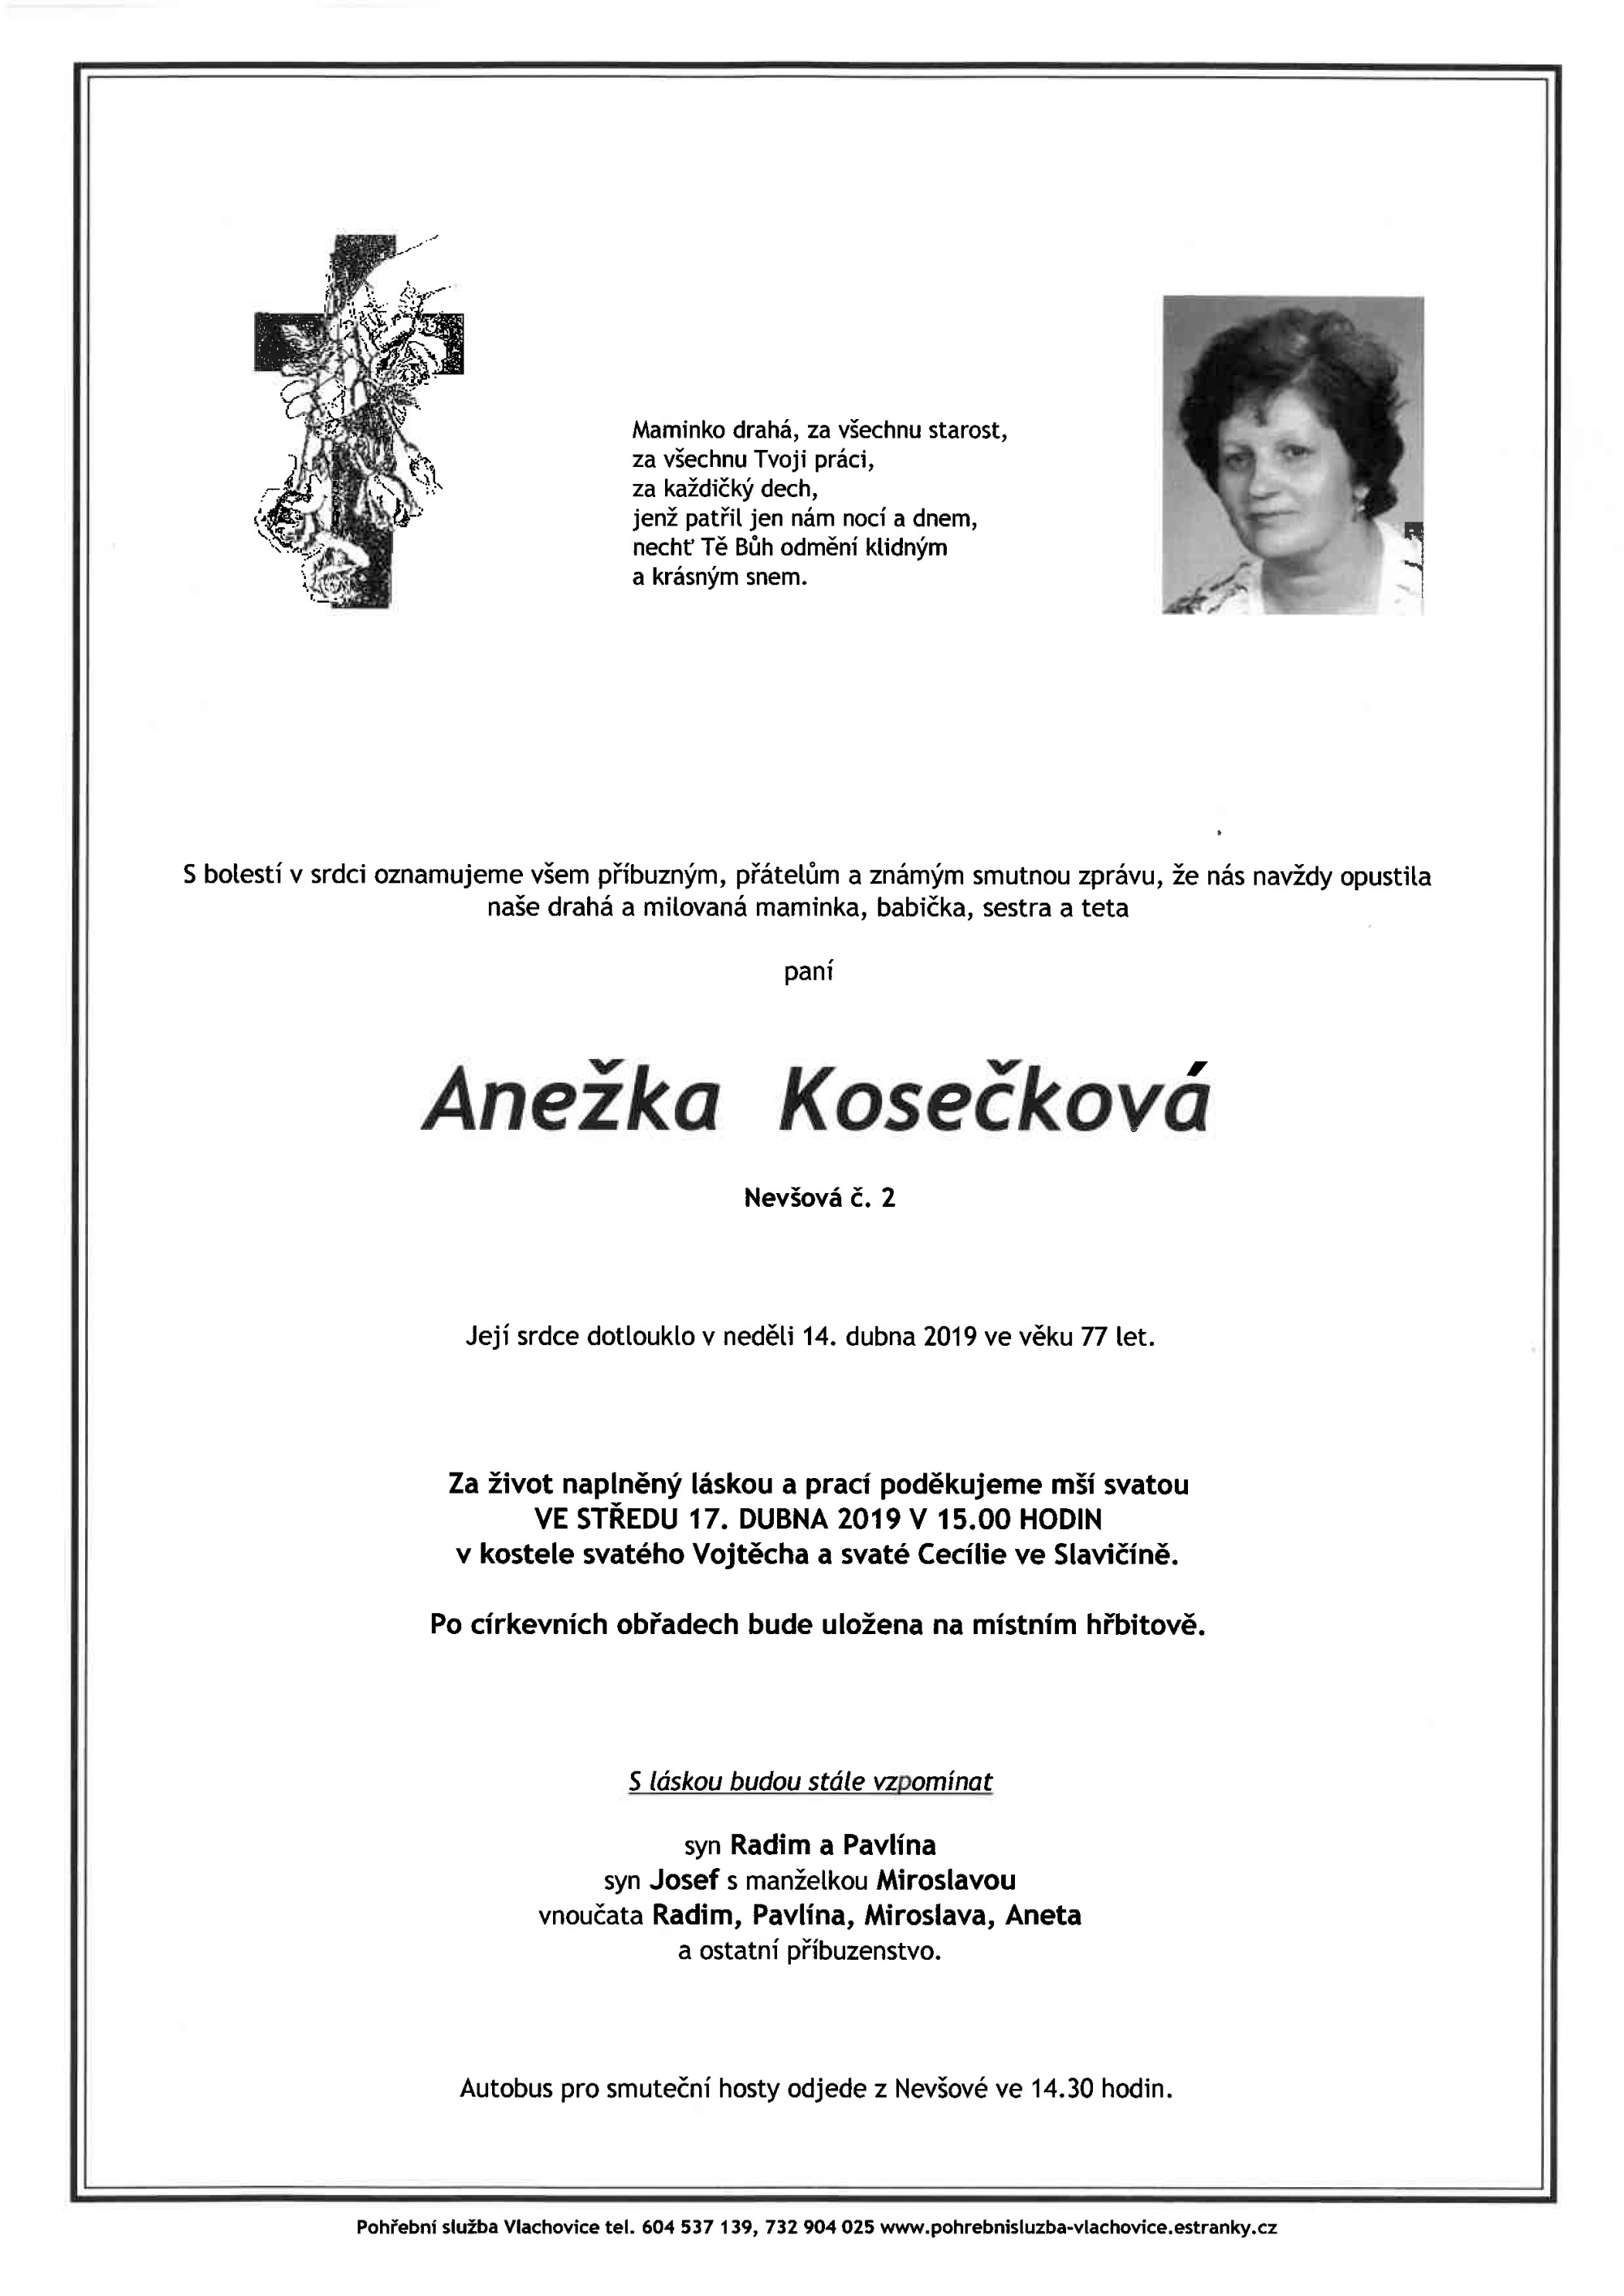 Anežka Kosečková